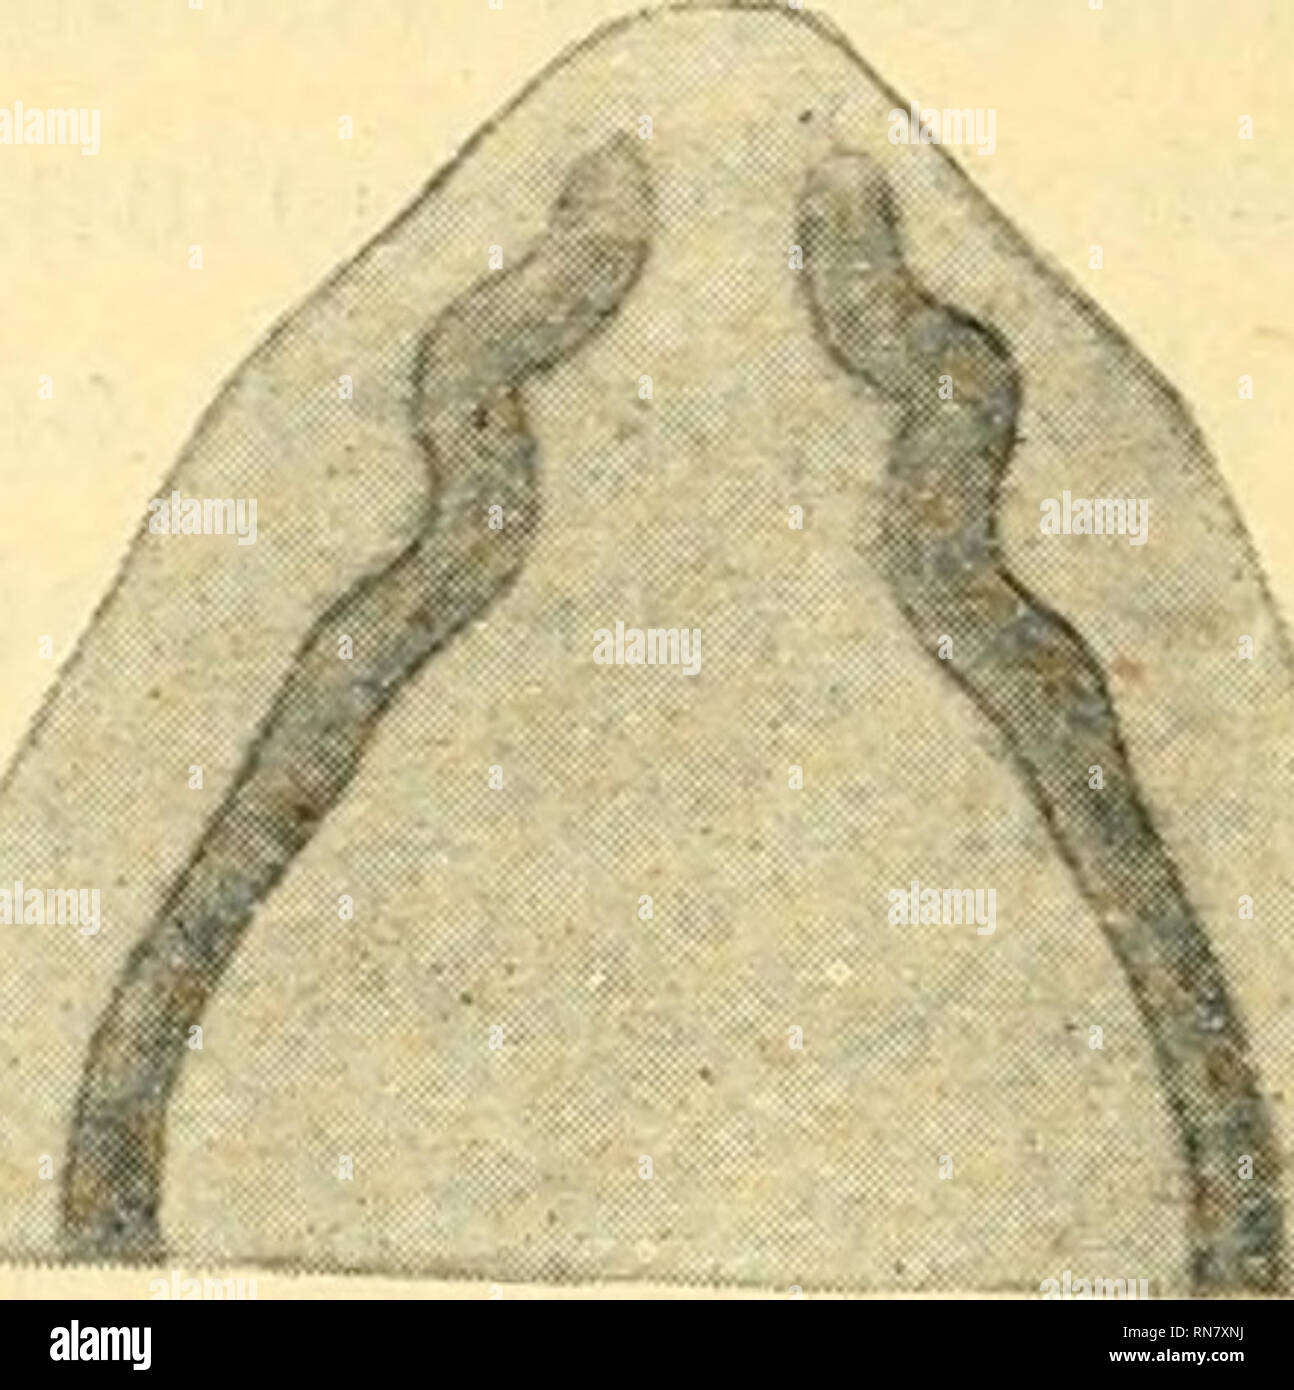 . Anatomischer Anzeiger. Anatomy, Comparative; Anatomy, Comparative. Abb. 17. Abb. 18. Abb. 14. Abb. 15. Abb. 16. Abb. 17. Abb. 18. Larus ridibundus. Embryo, Schnabelspitzescheitellänge 8 mm. Larus argentatus. Embryo, Schnabelspitzescheitellänge 6 mm. Larus argentatus. Embryo, Schnabelspitzescheitellänge 12 mm. Fulica atra. Embryo, Schnabelspitzescheitellänge 6,5 mm. Fulica atra. Embryo, Schnabelspitzescheitellänge 9 mm. der Vorderenden mehr den Zuständen bei Hühnerembryonen von 8 und 9 Tagen gleicht. Larus ridibundus. Embryo von 8 mm Kopflänge (Abb. 14). Einer ähnlichen Bie- gungsart sind wir Stock Photo